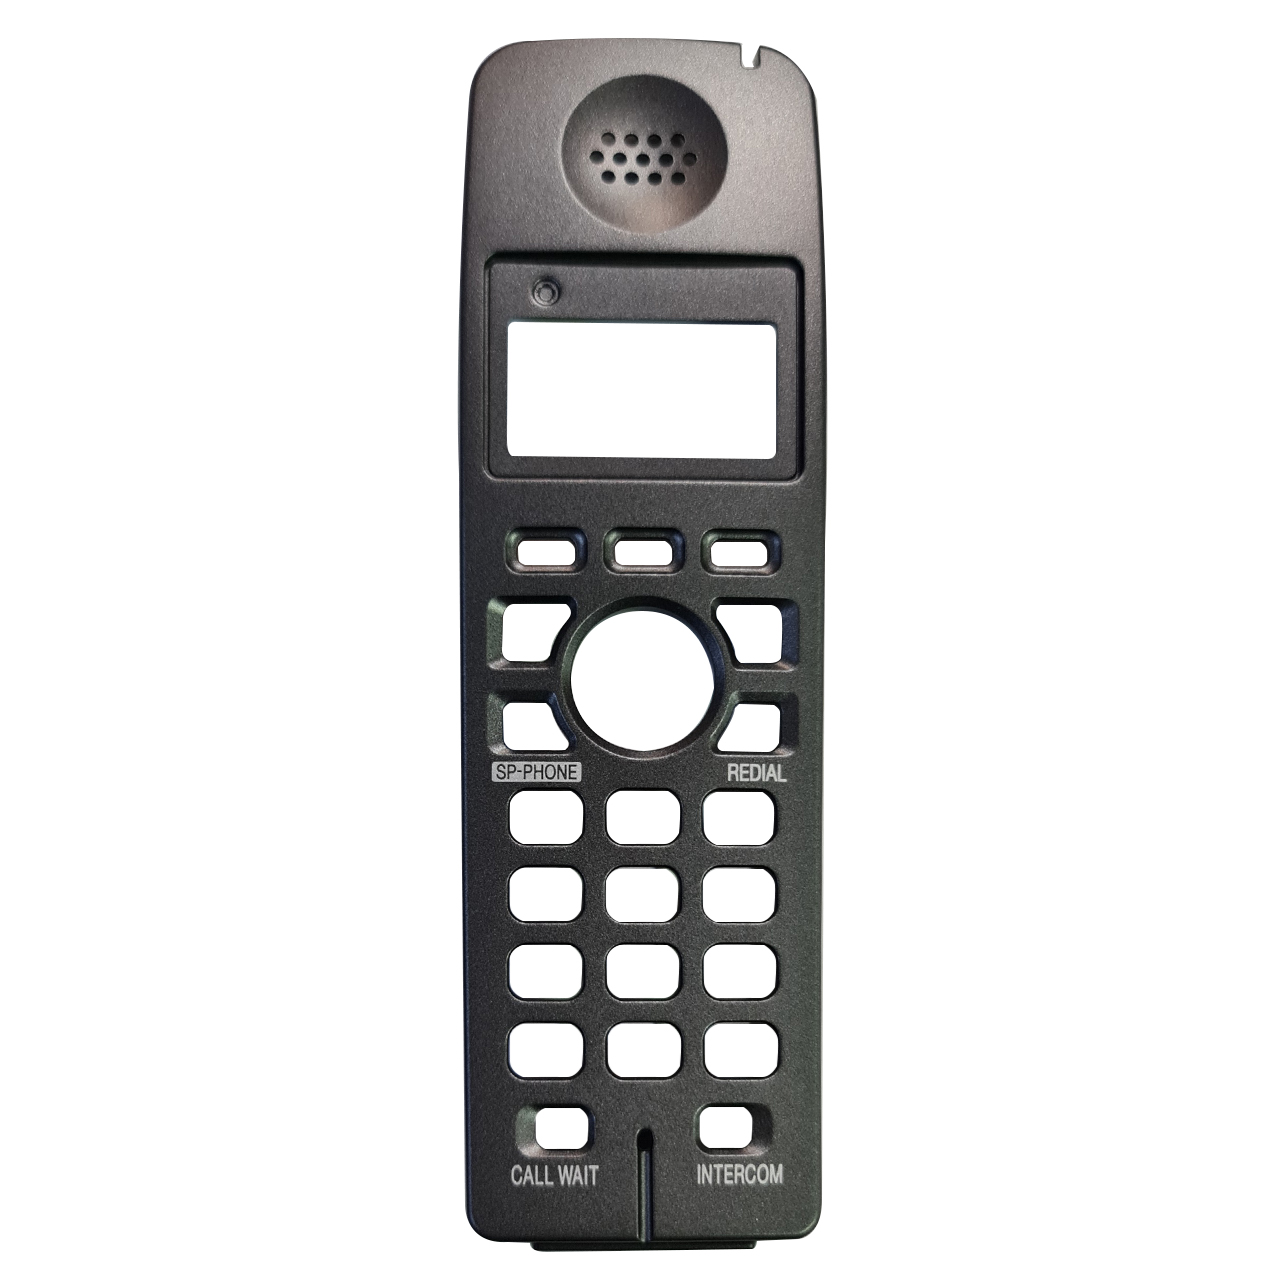 نقد و بررسی قاب یدکی تلفن بی سیم مدل GH35XX مناسب تلفن پاناسونیک توسط خریداران